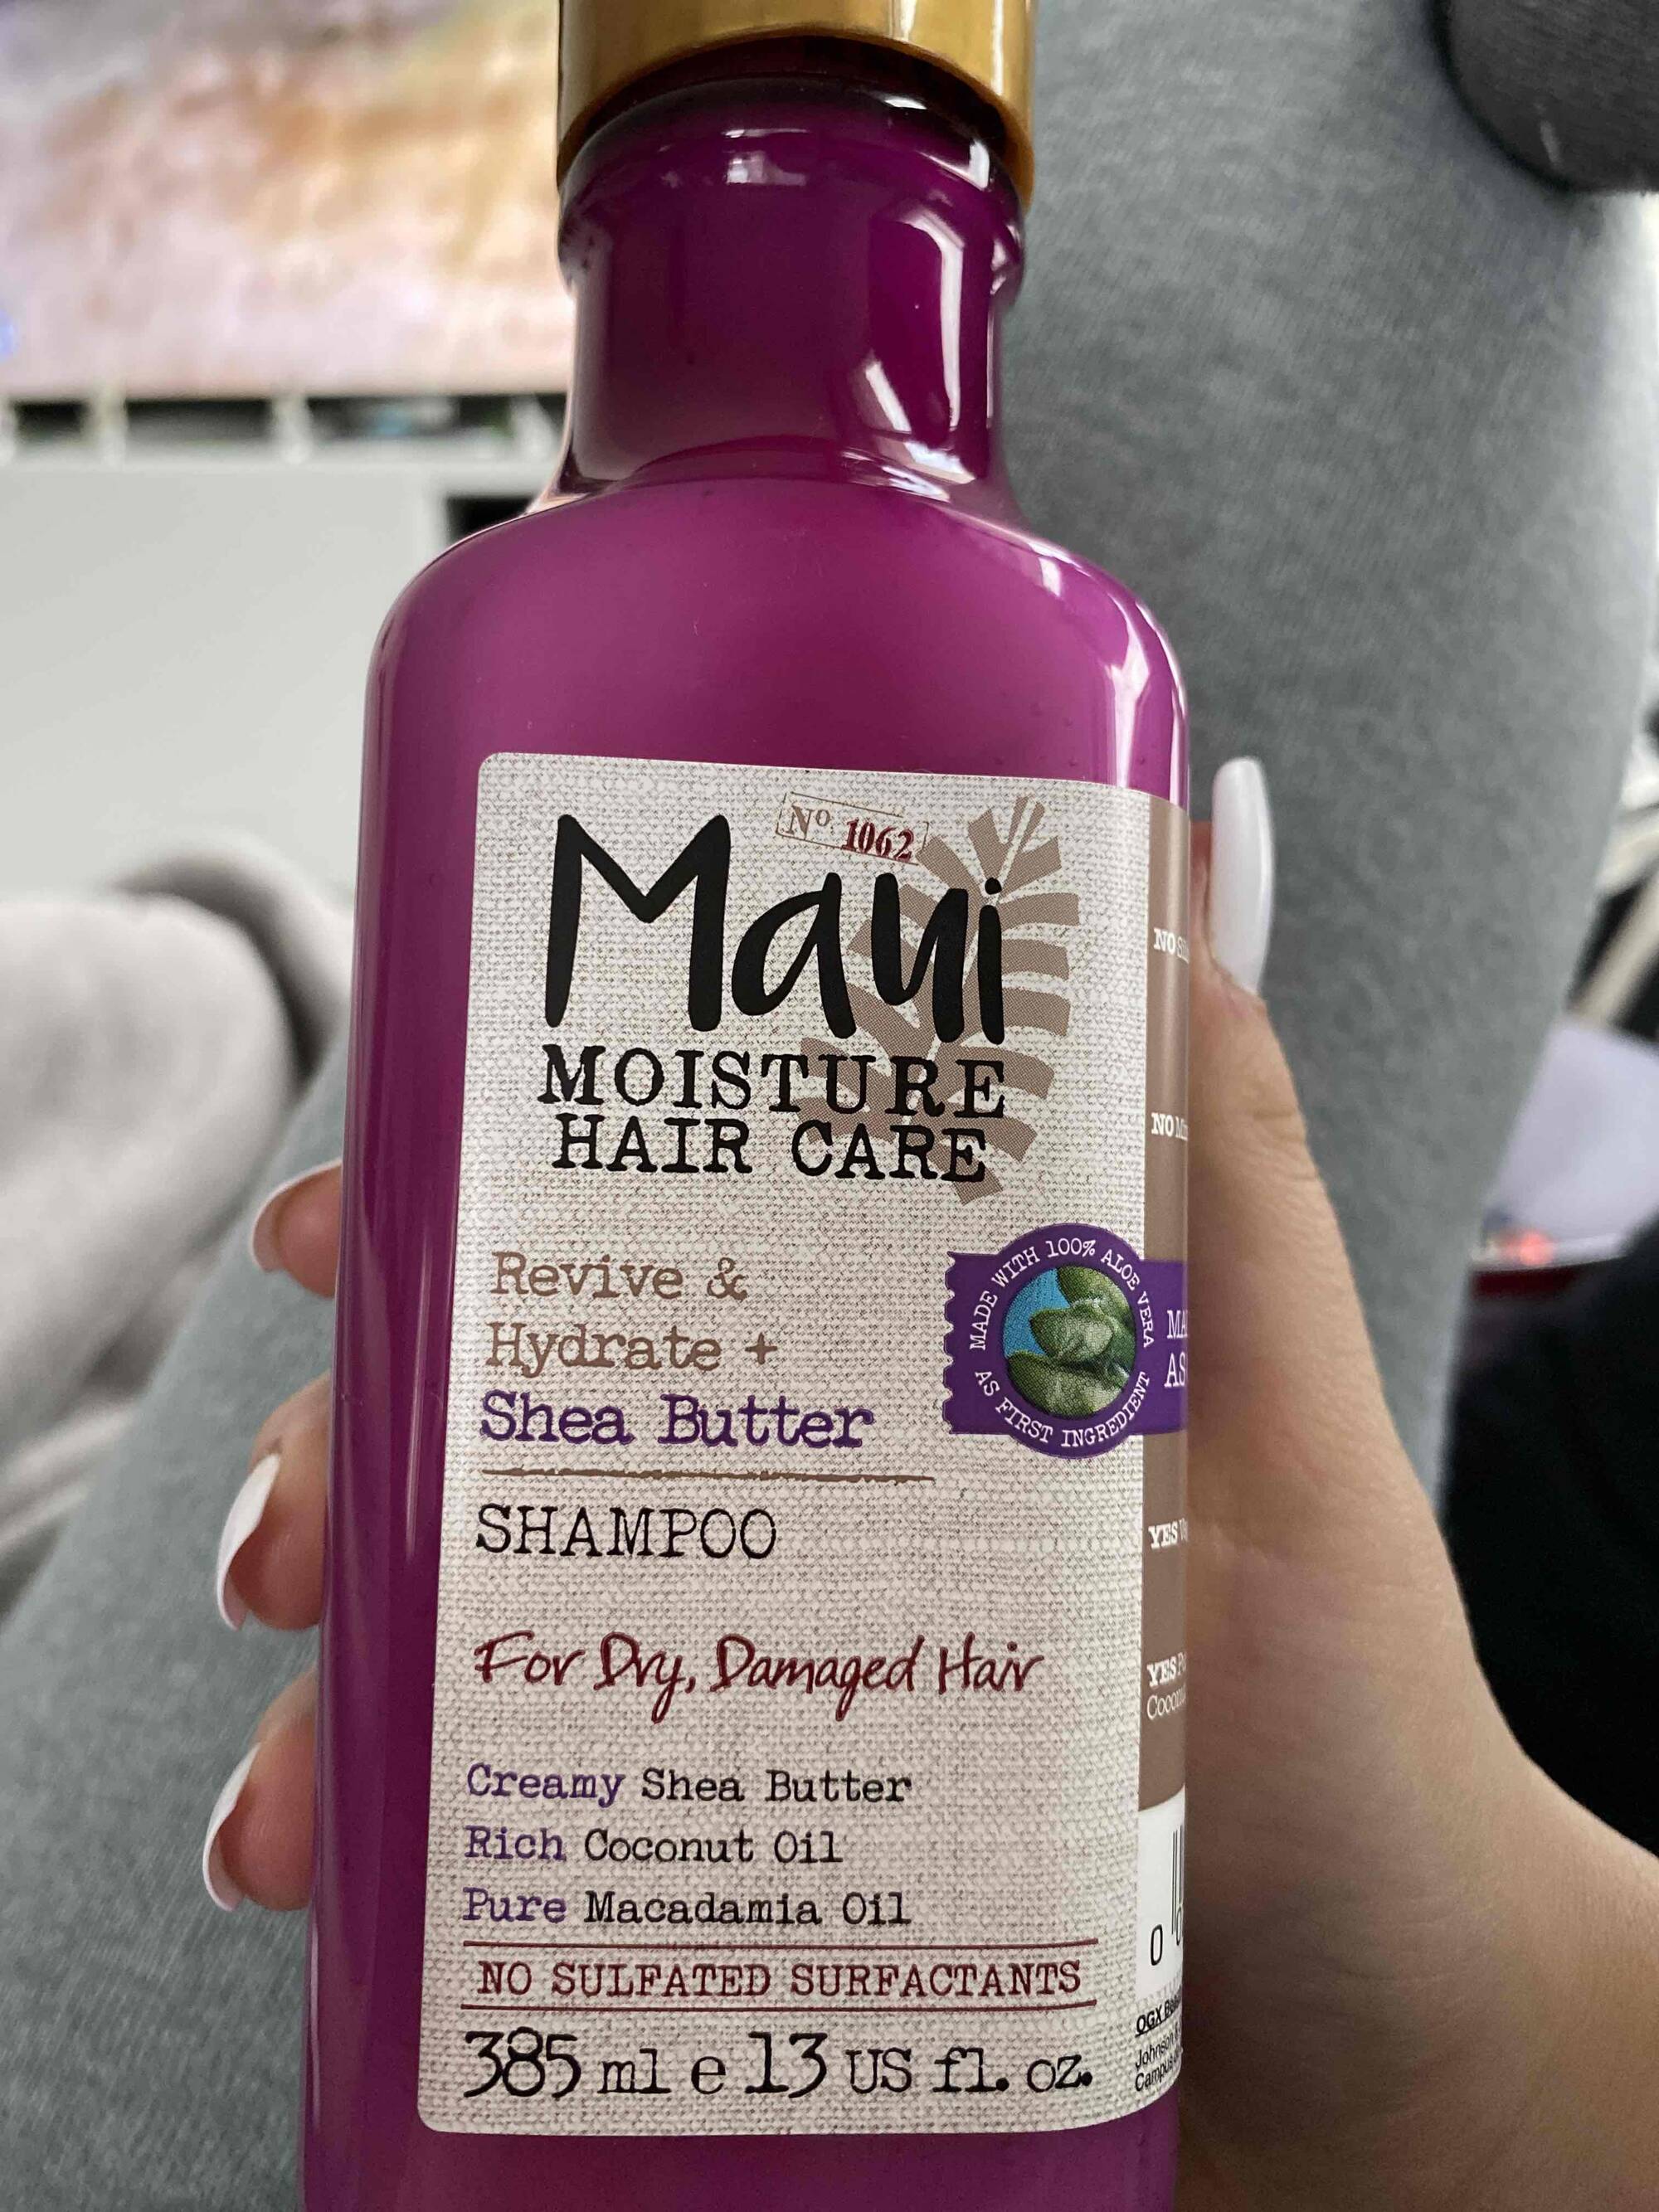 MAUI MOISTURE - Hair care - Shampoo